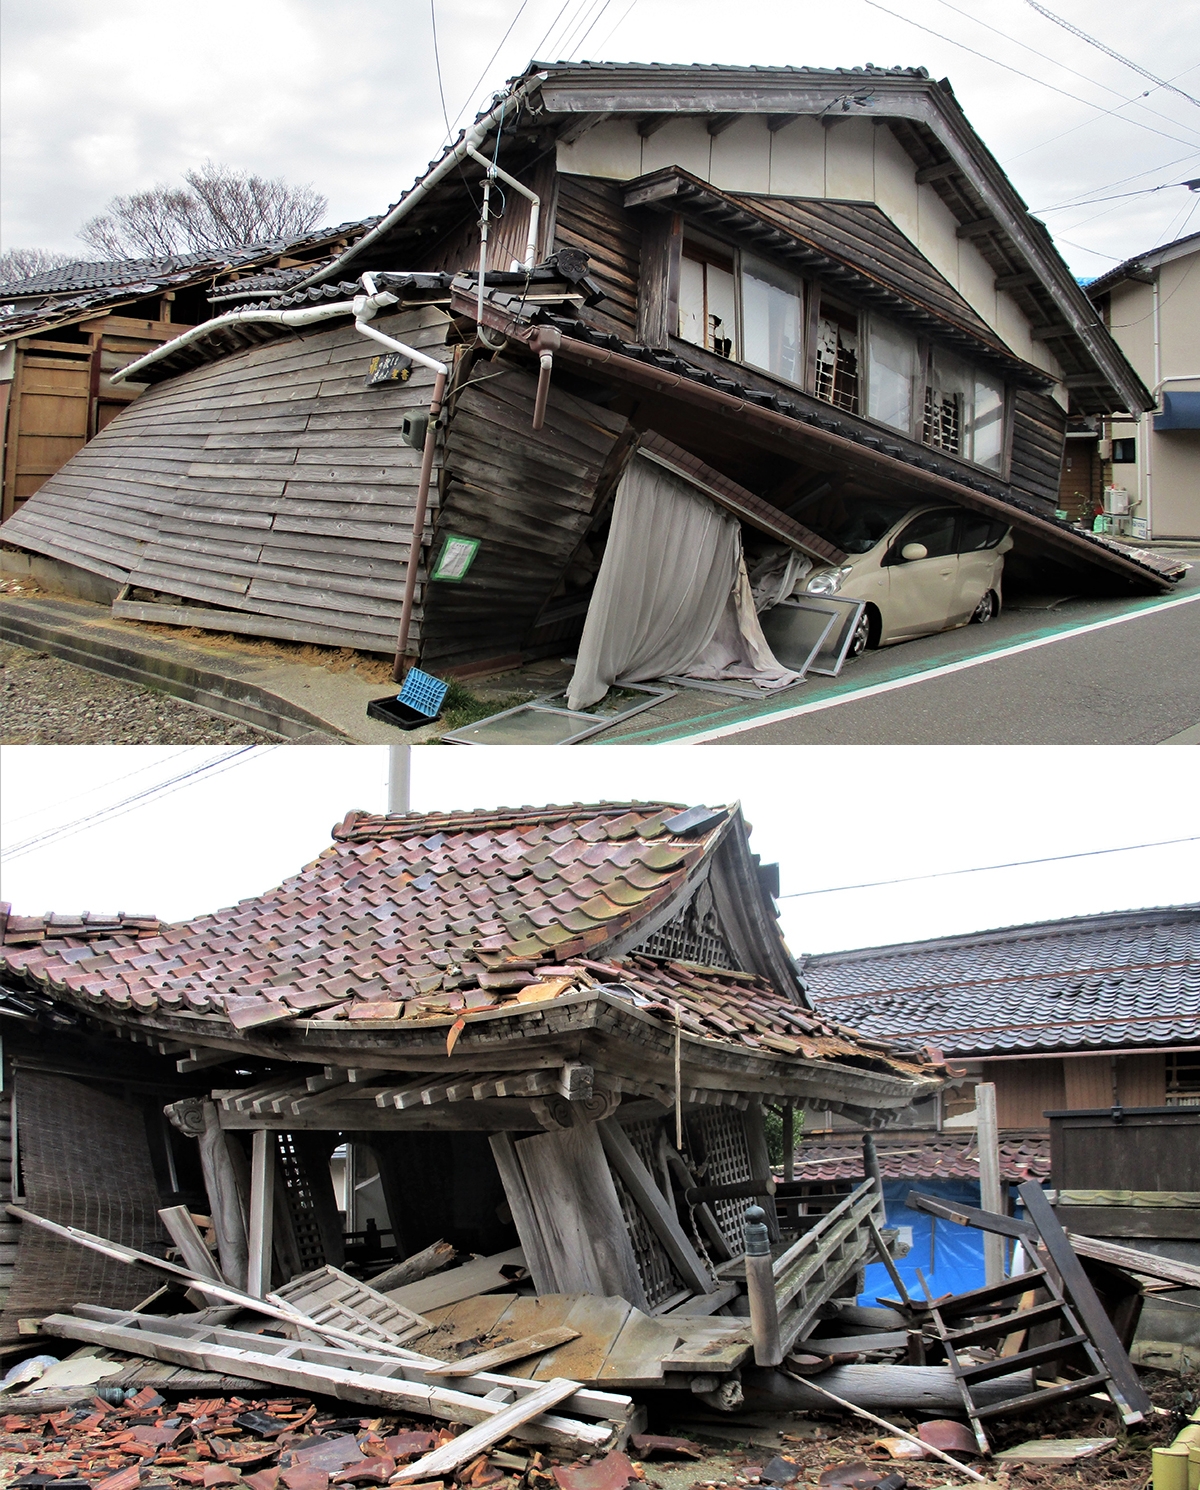 倒壊した家屋、寺院の写真が上下に並んでいる